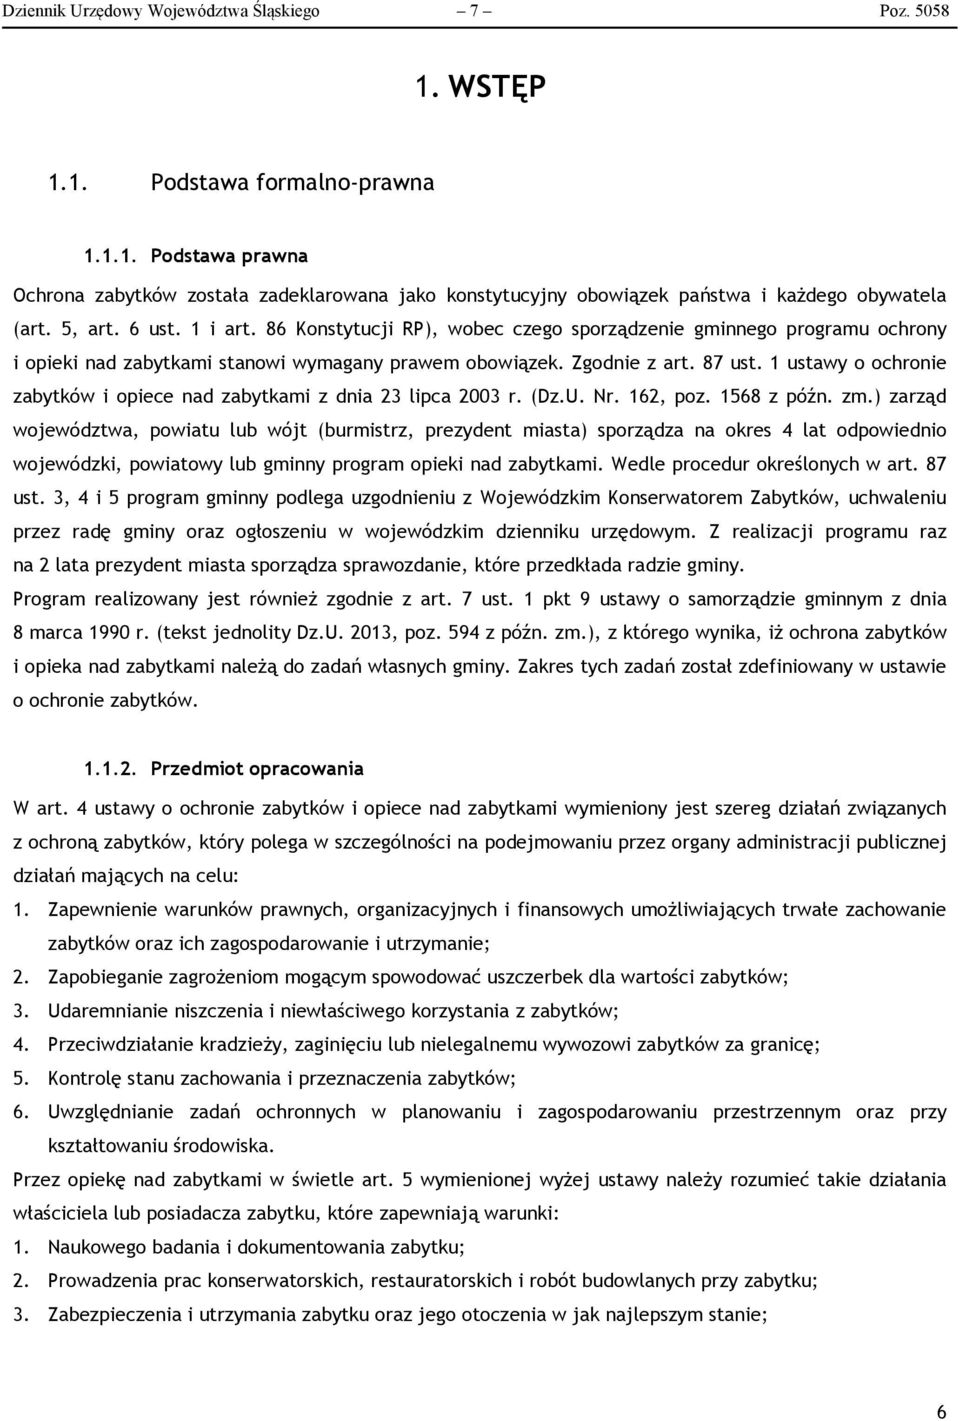 1 ustawy o ochronie zabytków i opiece nad zabytkami z dnia 23 lipca 2003 r. (Dz.U. Nr. 162, poz. 1568 z późn. zm.